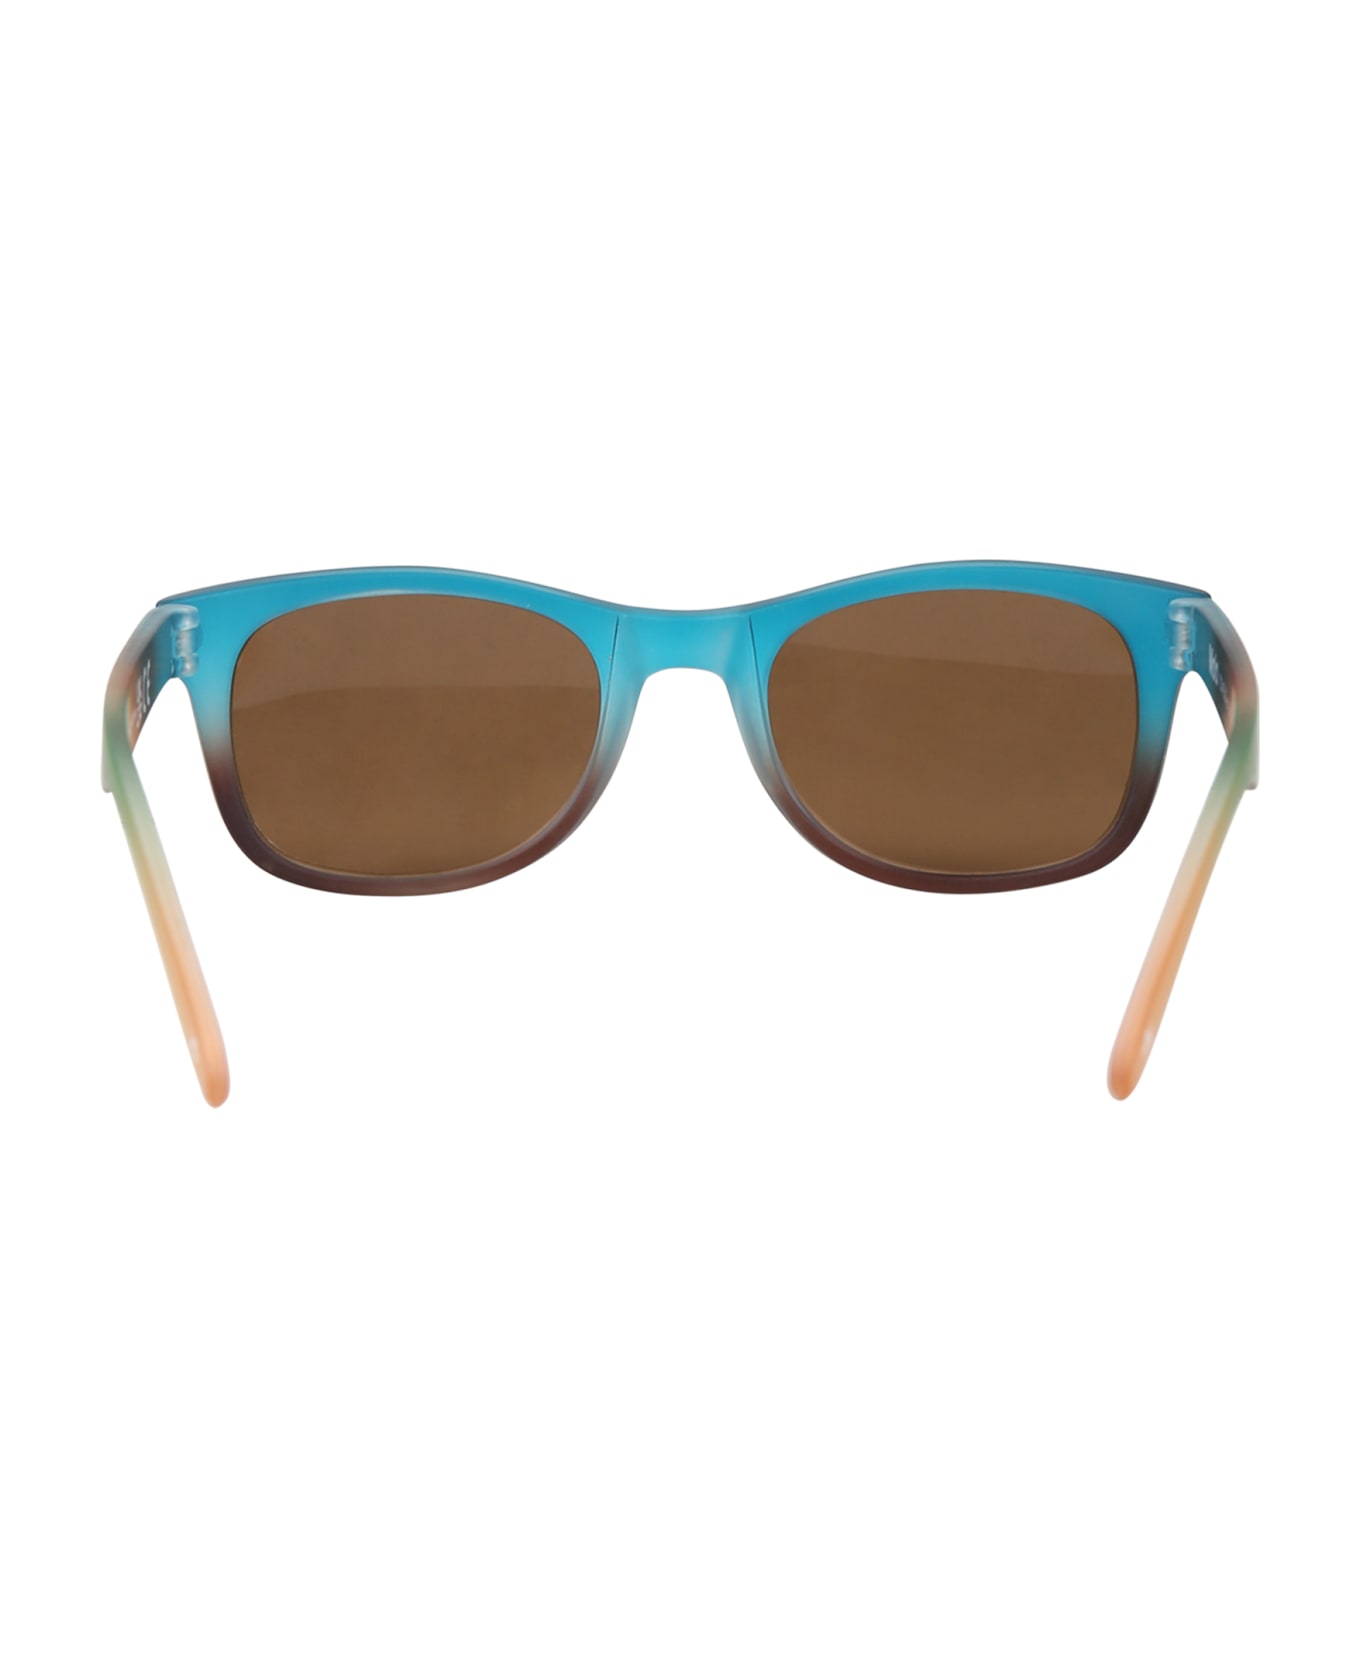 Molo Multicolor Star Sunglasses For Boy - Multicolor